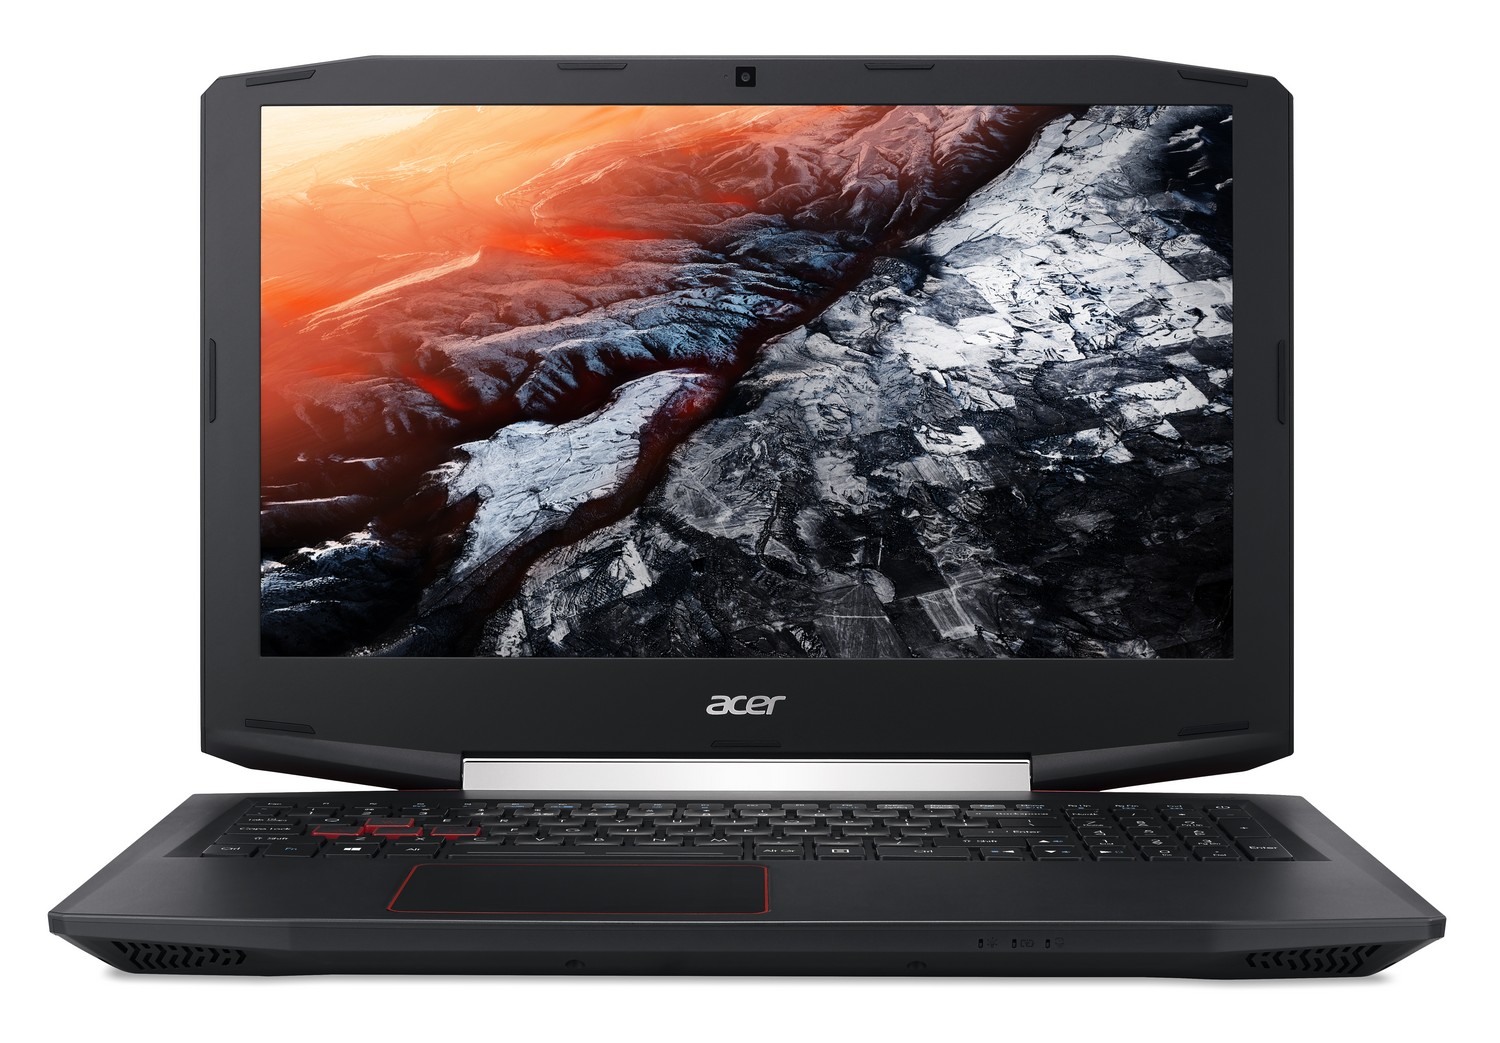 Acer Aspire Vx 15 - HD Wallpaper 